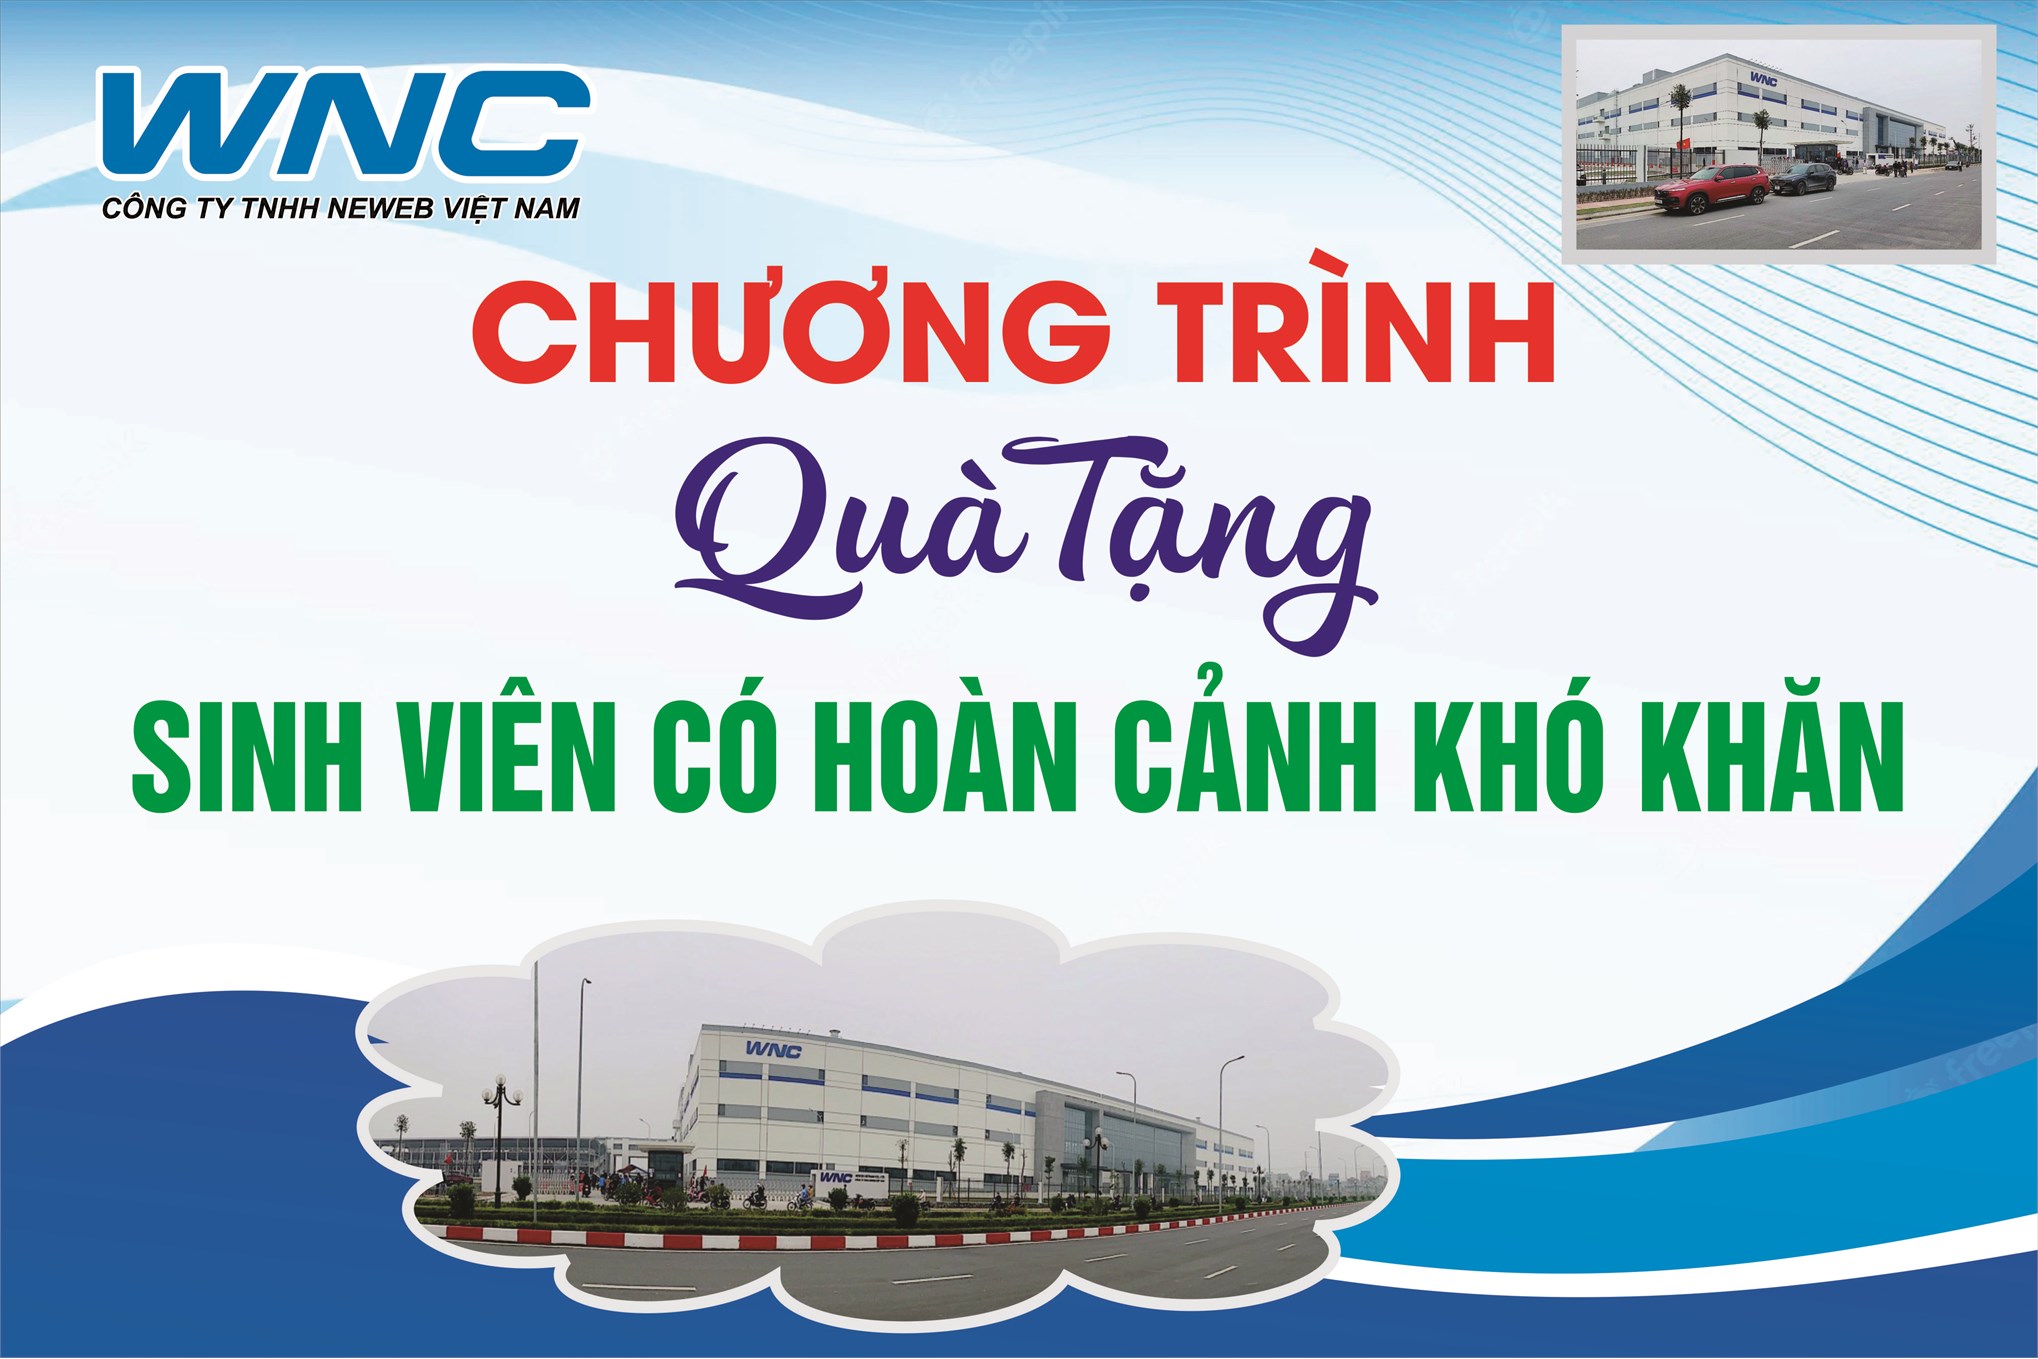 Neweb Việt Nam trao quà hỗ trợ sinh viên có hoàn cảnh khó khăn